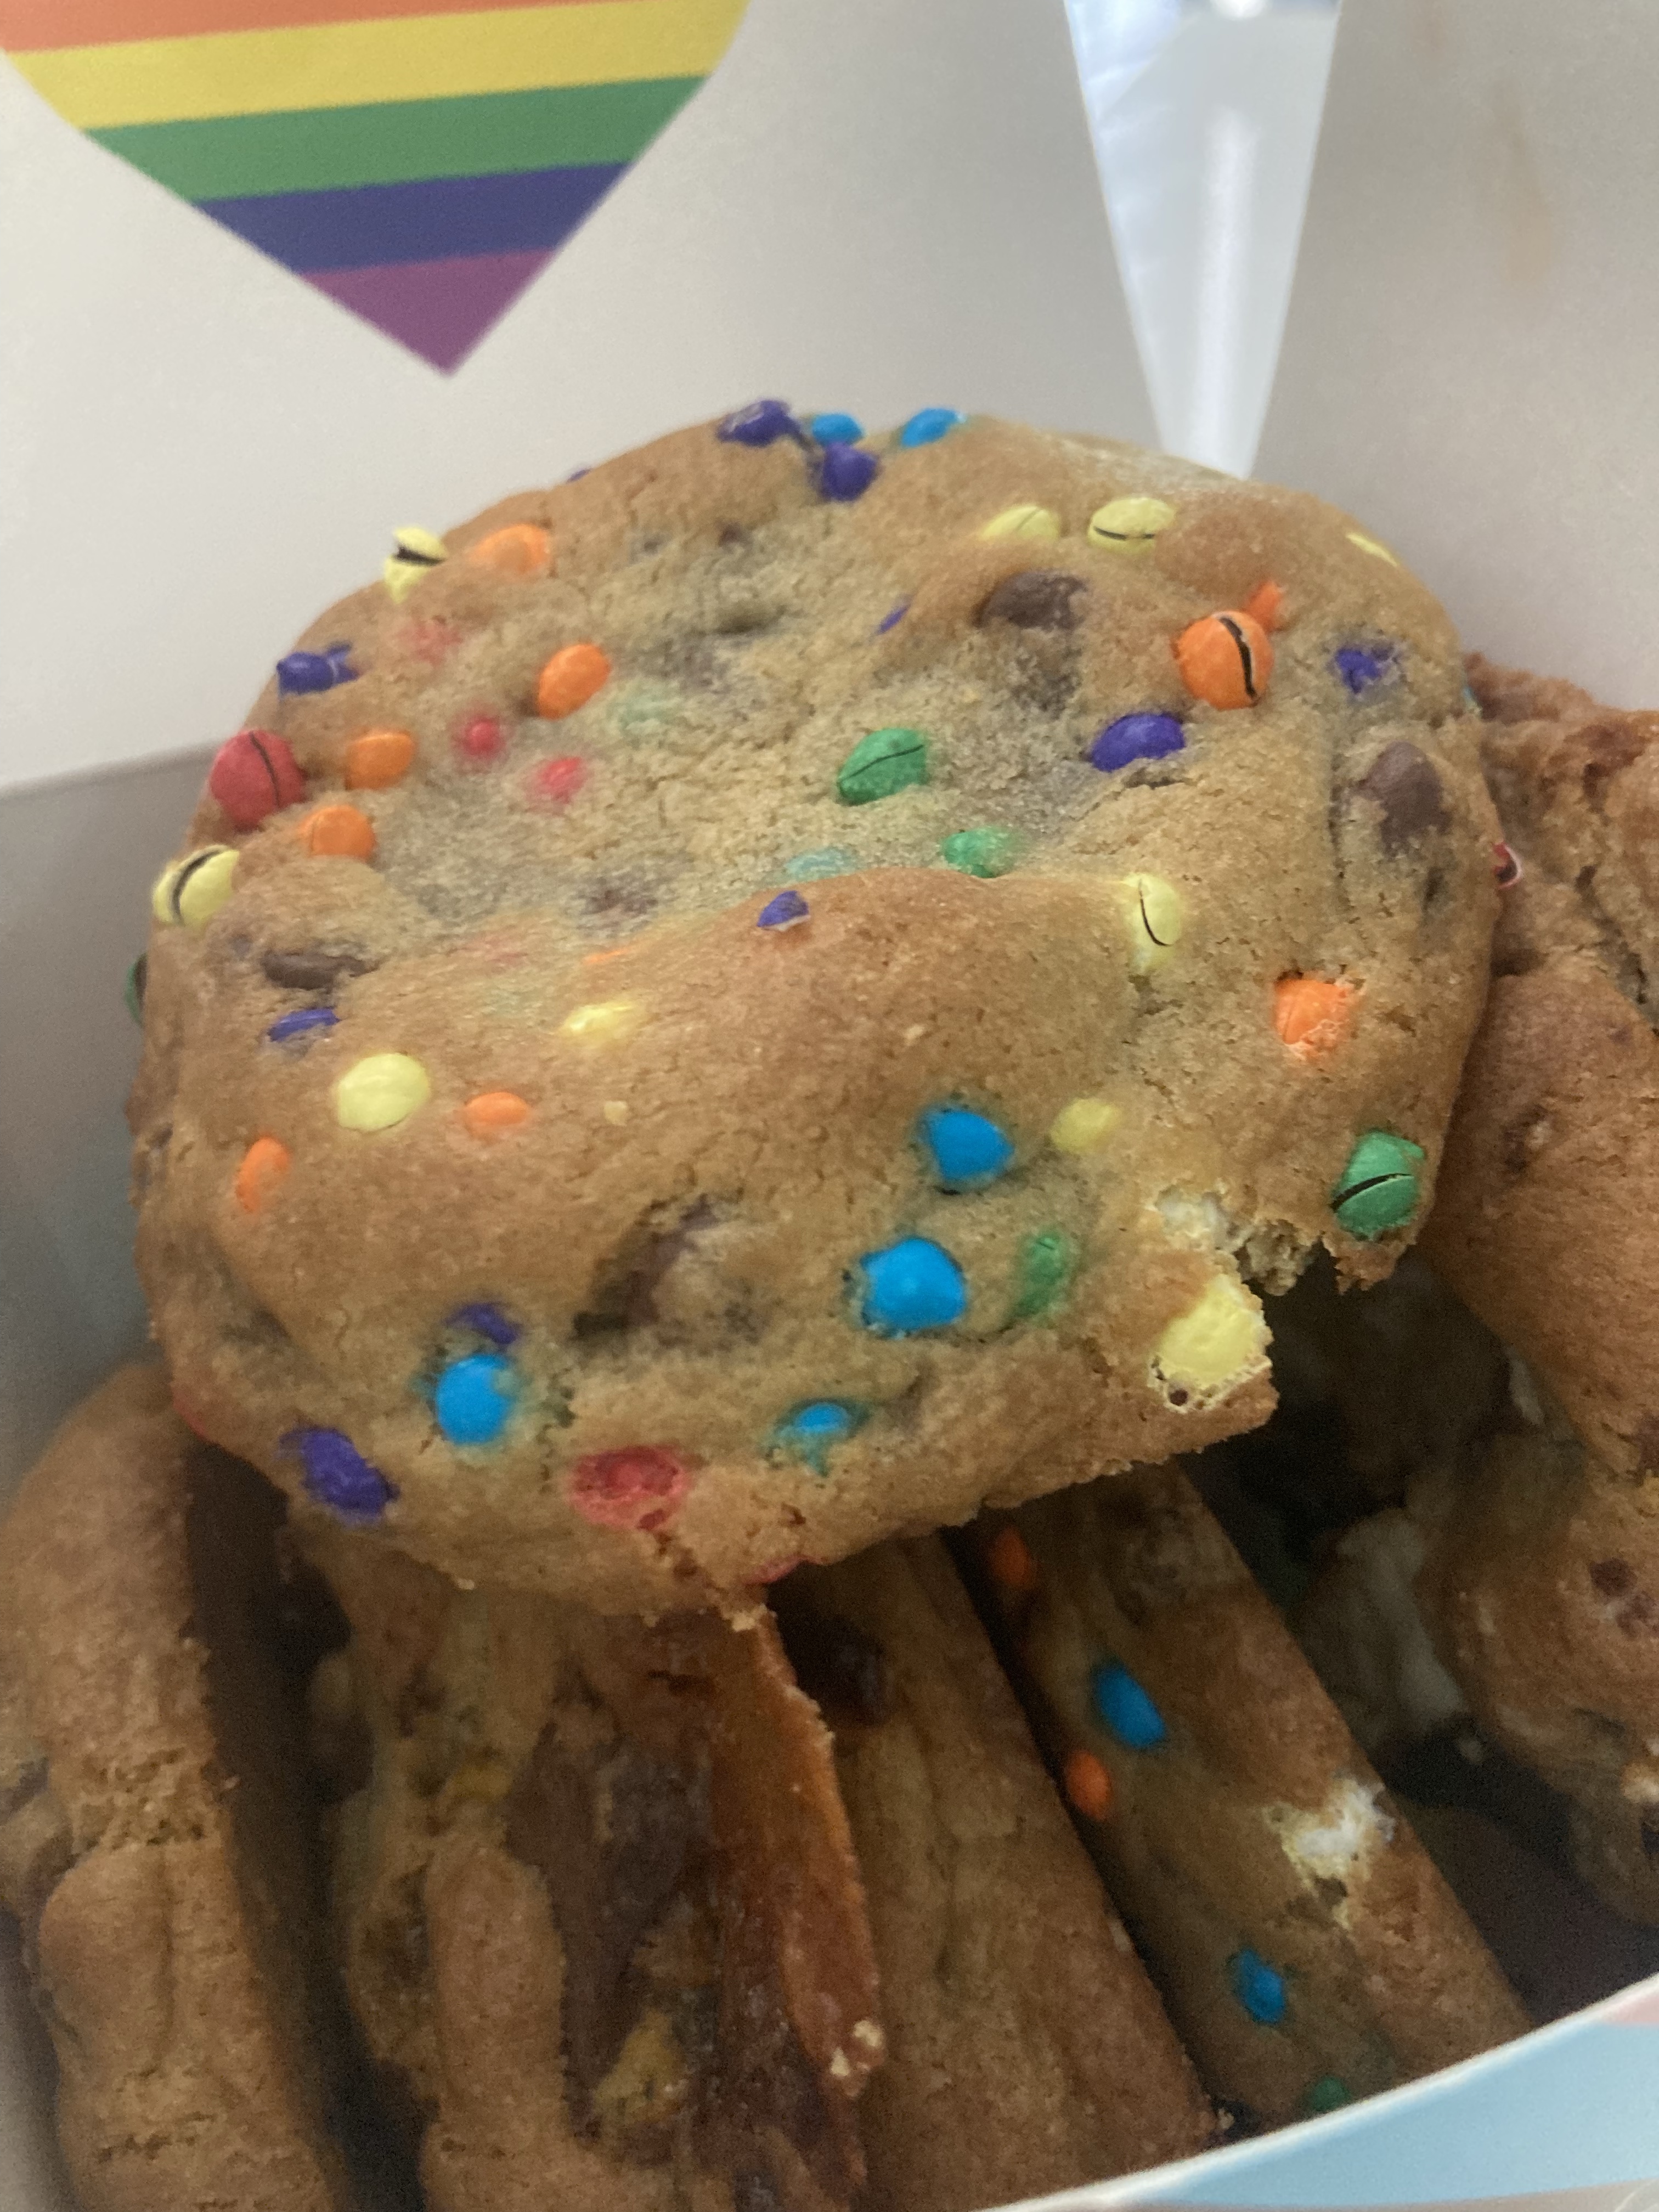 Craig’s Cookies on Queen Street West